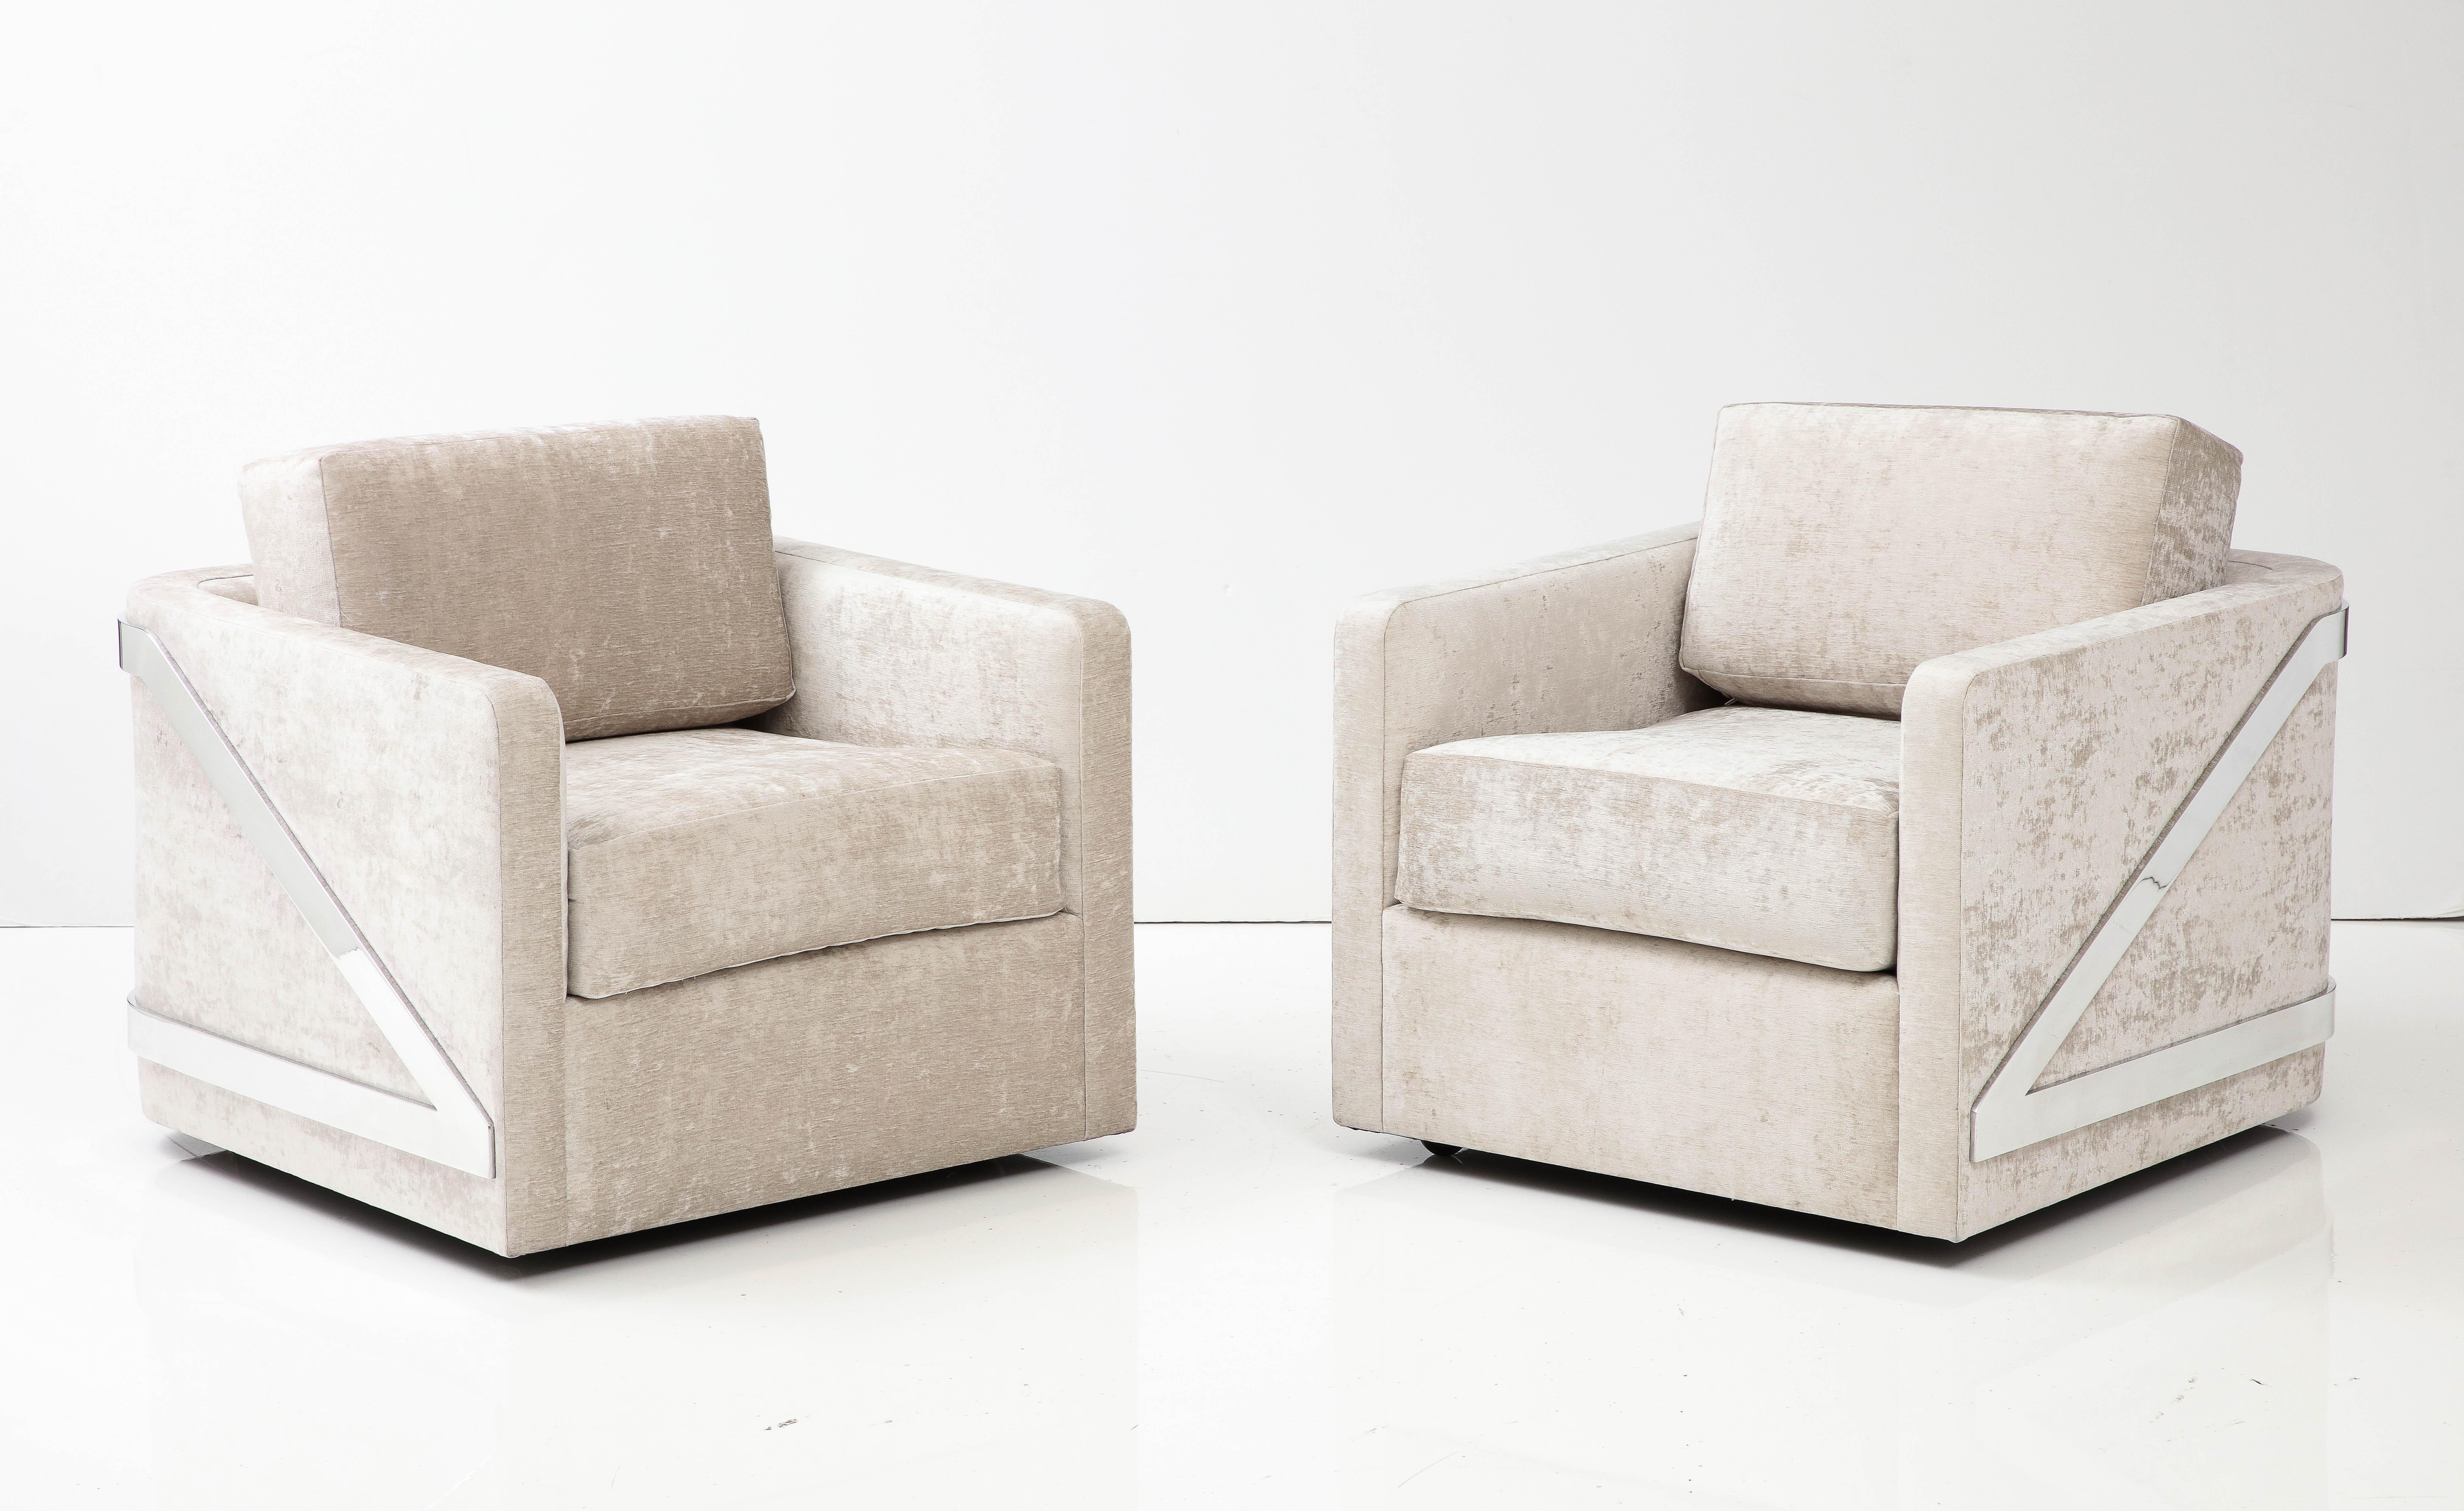 Ein Paar seltene, elegante und raffinierte Mid-Century-Clubstühle, entworfen von 
Erwin-Lambeth.
Die Stühle wurden wunderschön mit einem luxuriösen Stoff neu gepolstert und 
werden durch die neu polierten Chromrahmen akzentuiert.
Die Stühle sind 